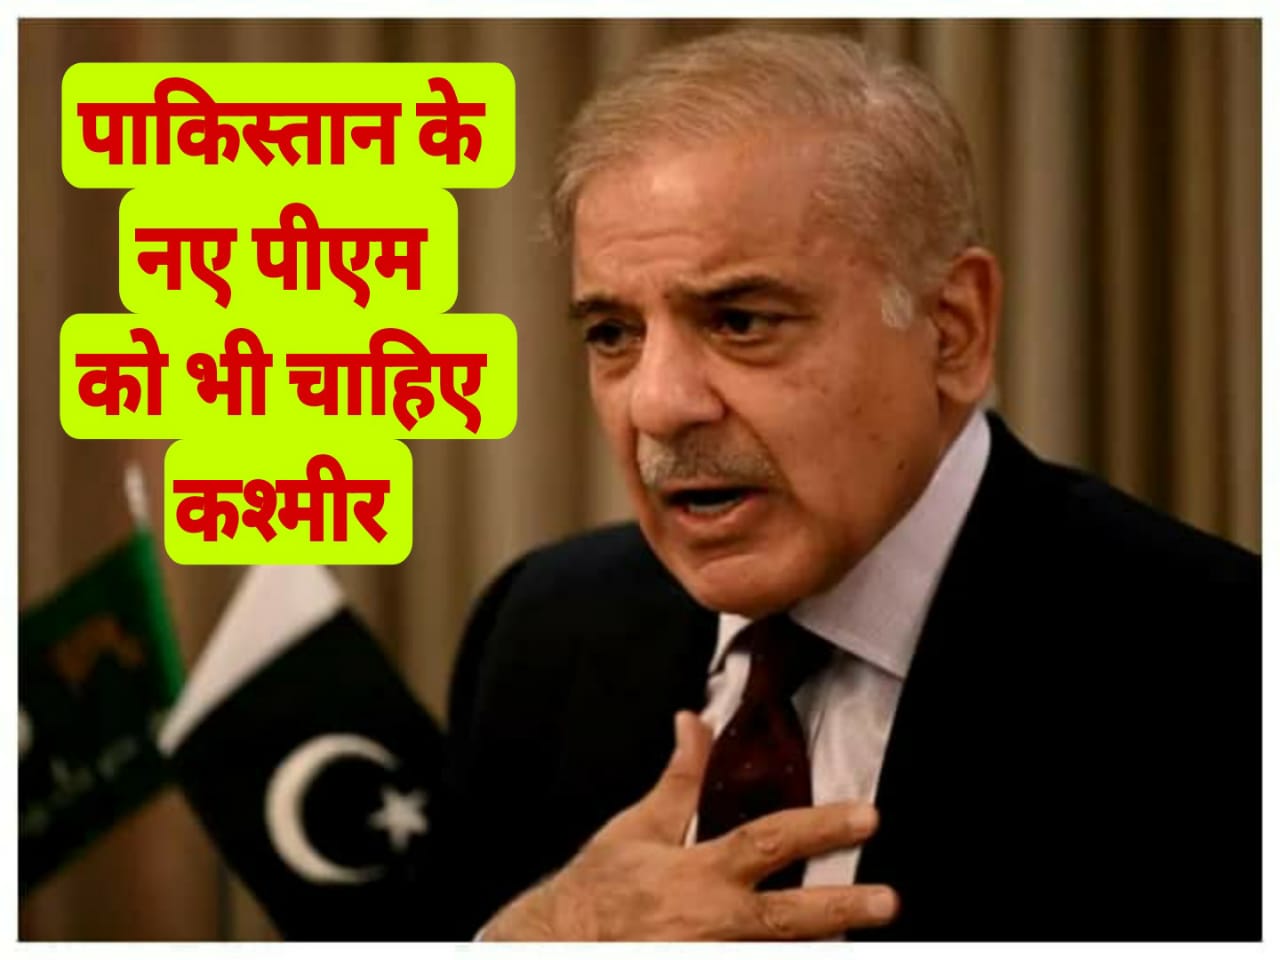 पाकिस्तान के नए पीएम शाहबाज शरीफ को चाहिए कश्मीर, पहले भाषण में भारत के खिलाफ उगला जहर